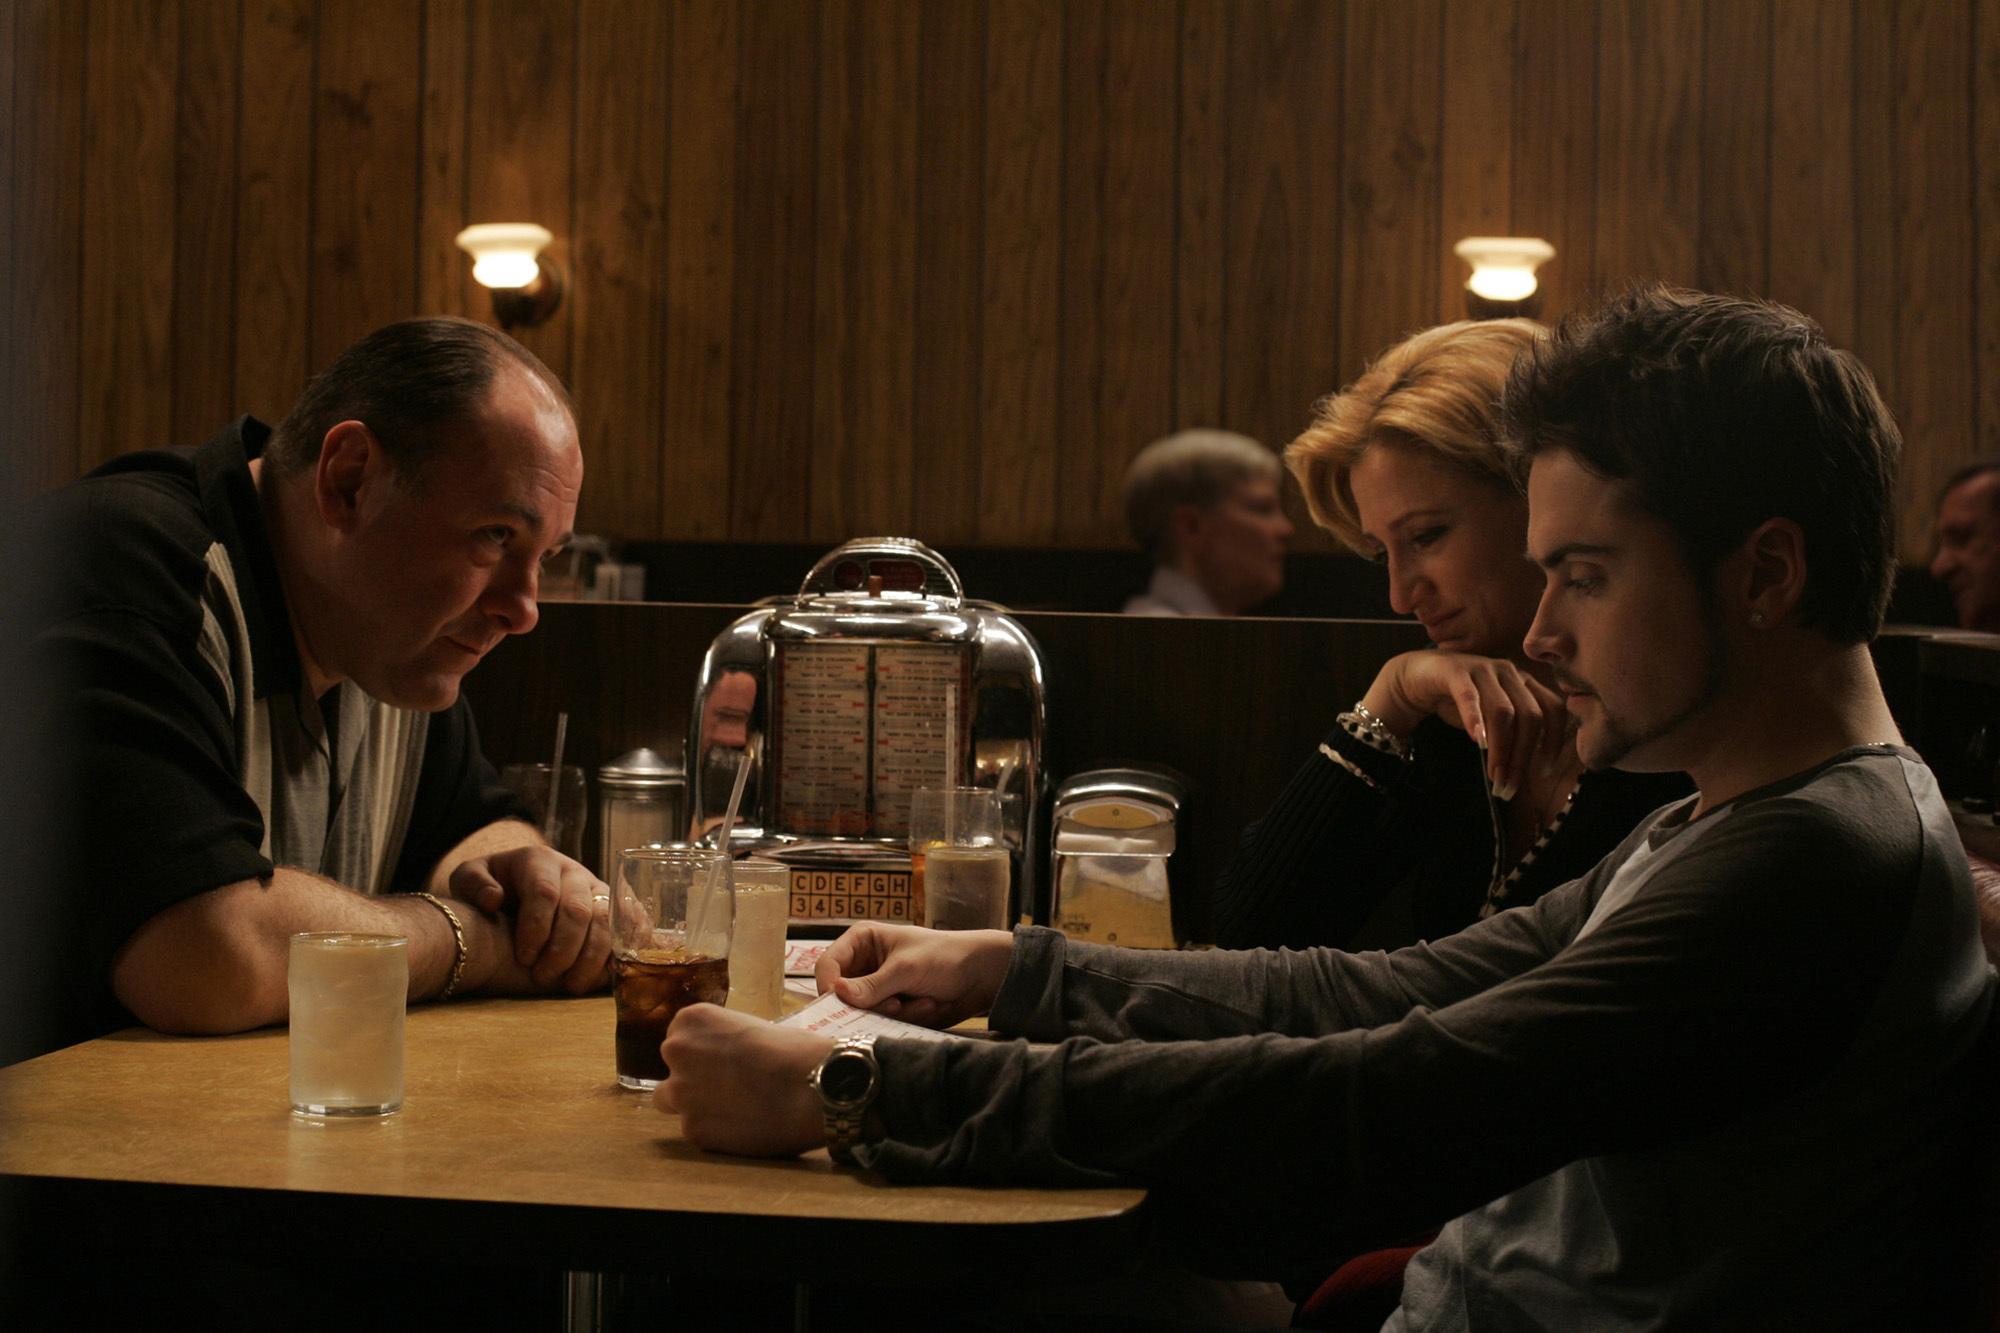 A última cena de The Sopranos cria tensão e mistério, deixando os espectadores vidrados.